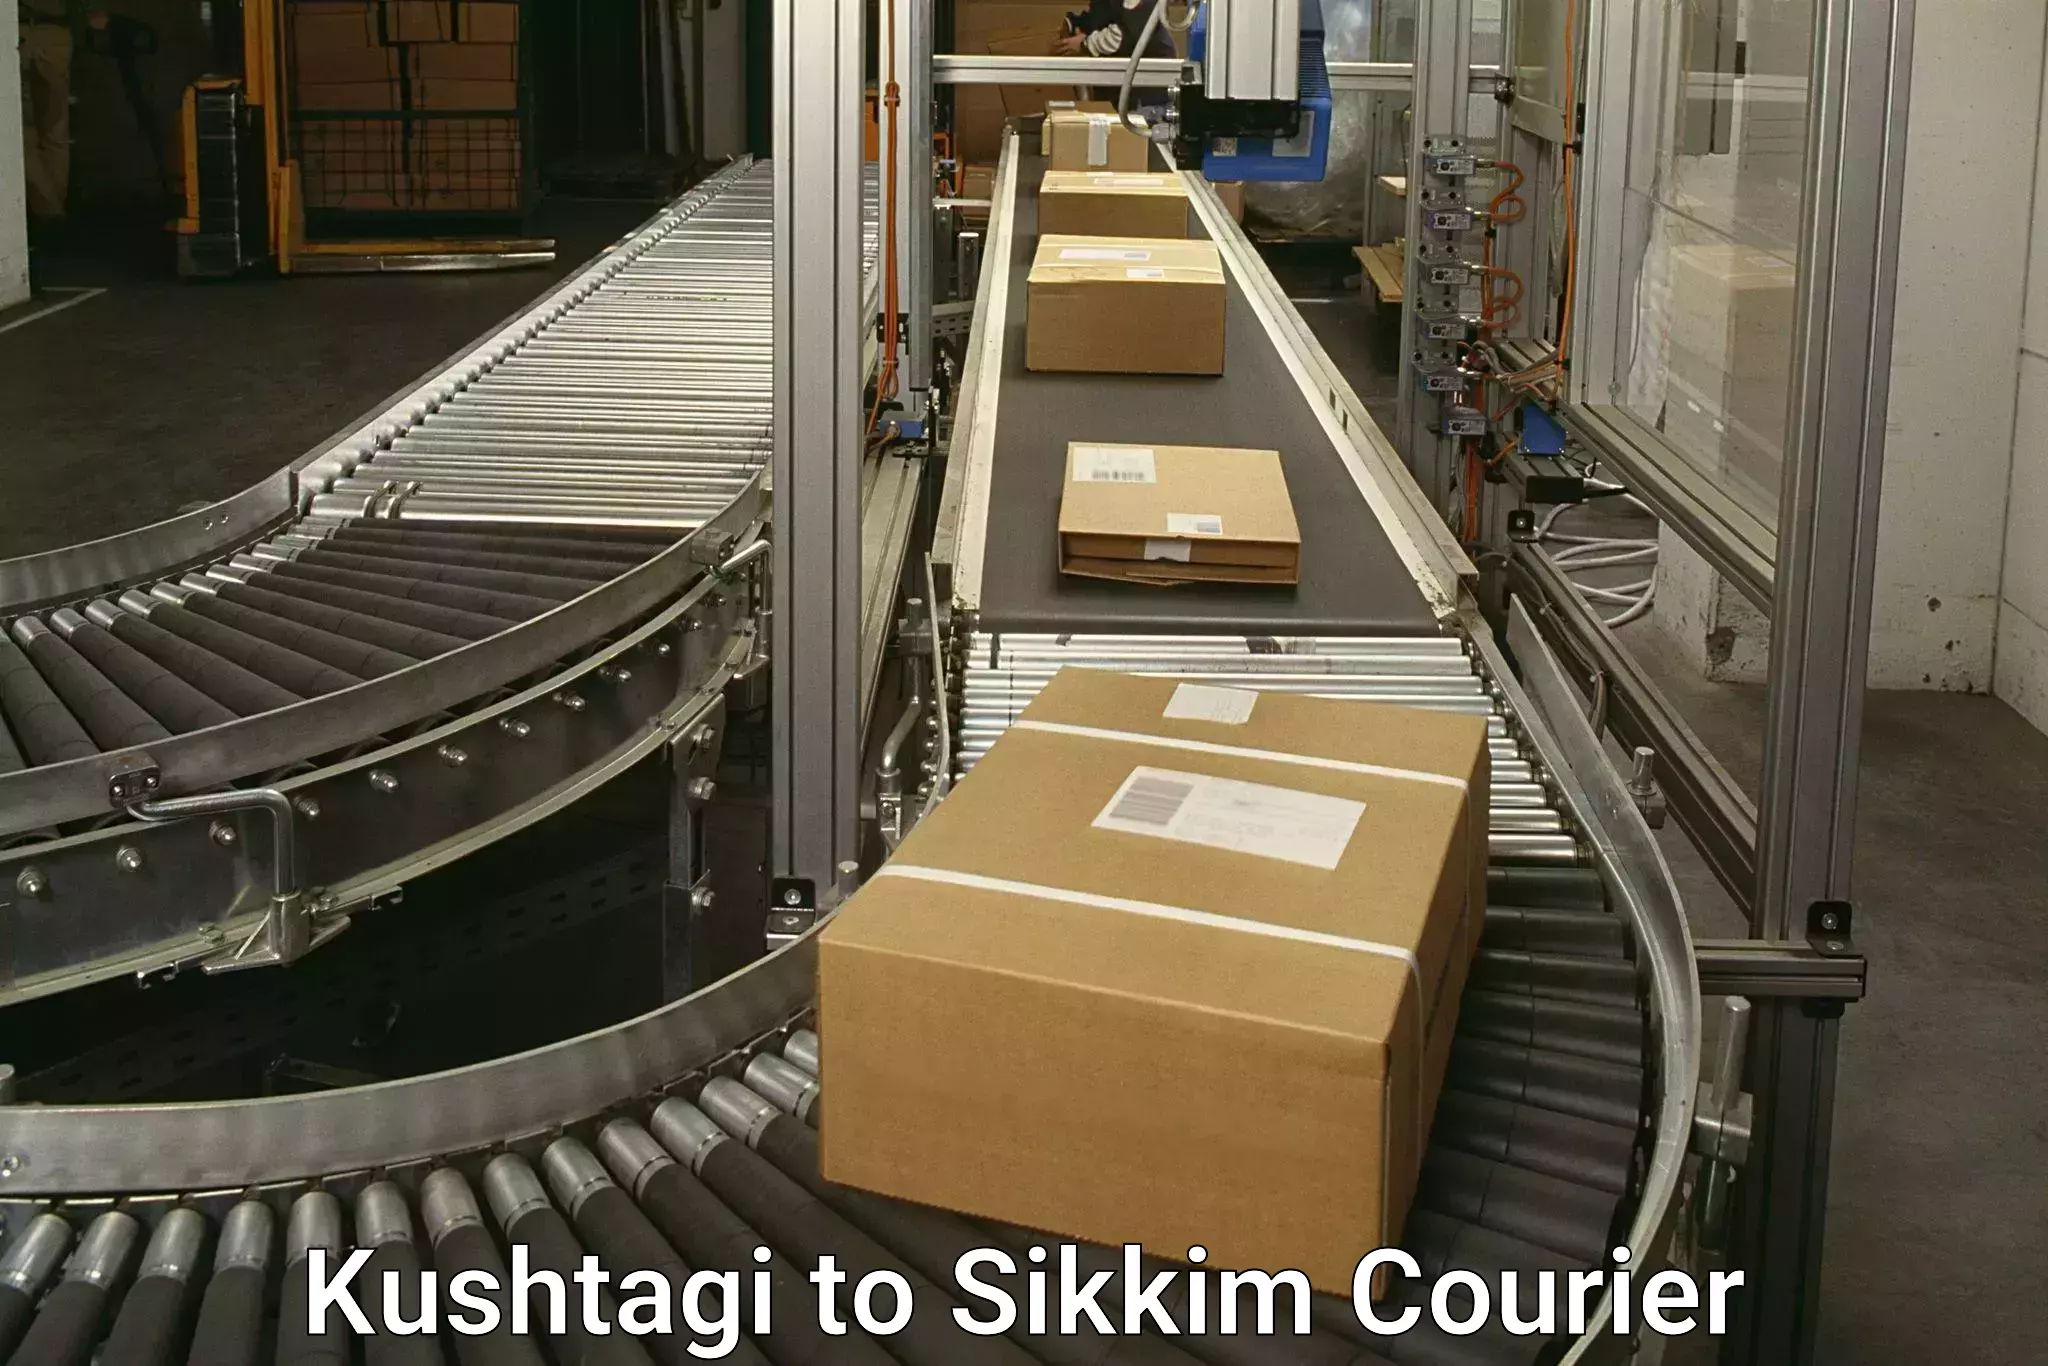 Cargo courier service Kushtagi to Pelling